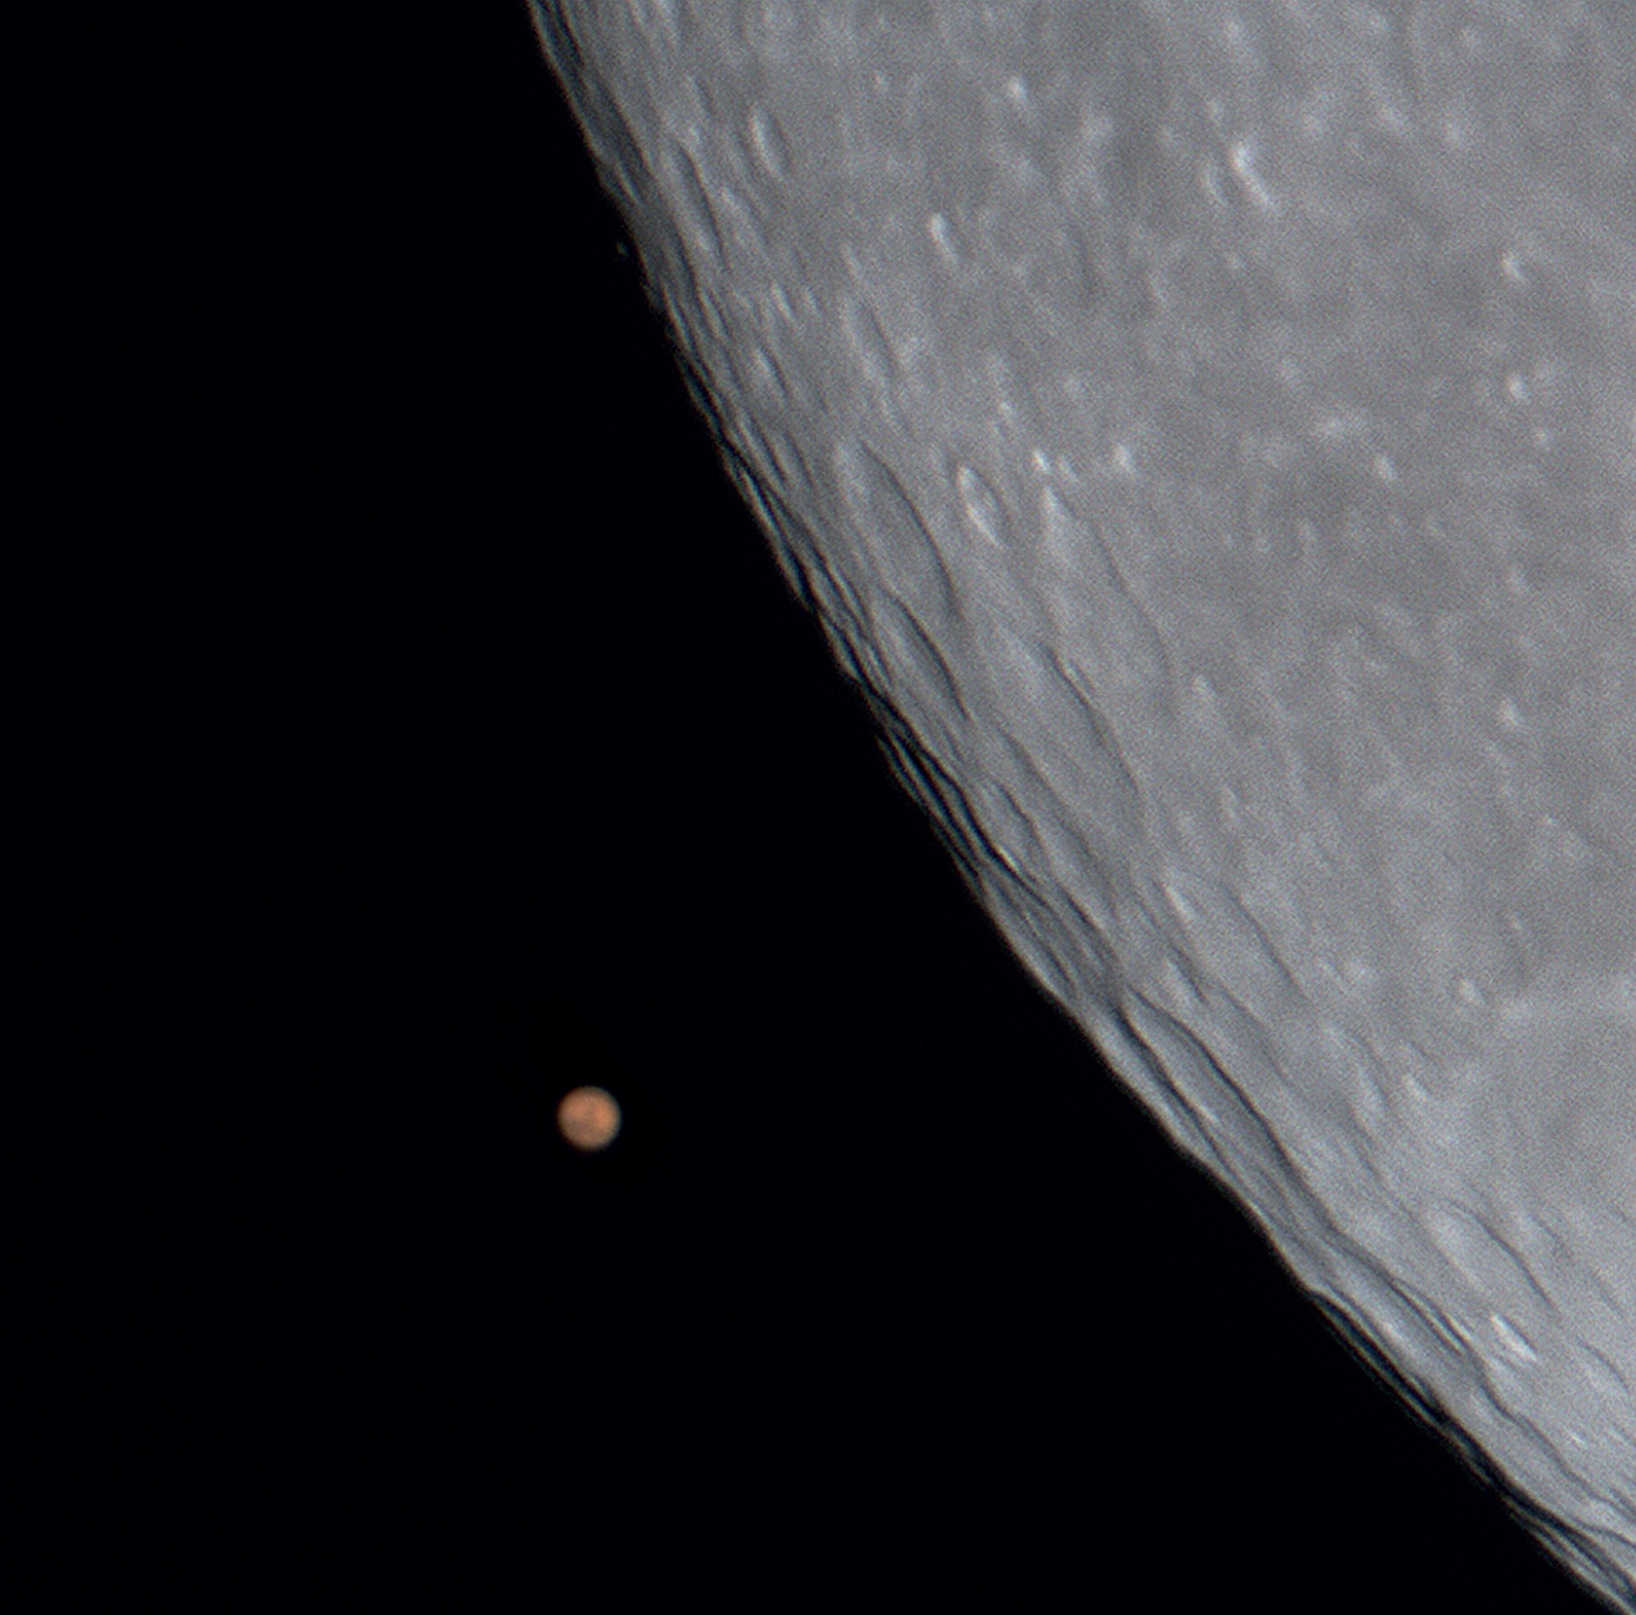 Quasi-occultation de la planète Mars par la Lune, le 24/12/2007. Photo prise avec une caméra CCD non refroidie placée sur un TSC d’une ouverture de 200 mm et d’une distance focale de 2 000 mm. U. Dittler